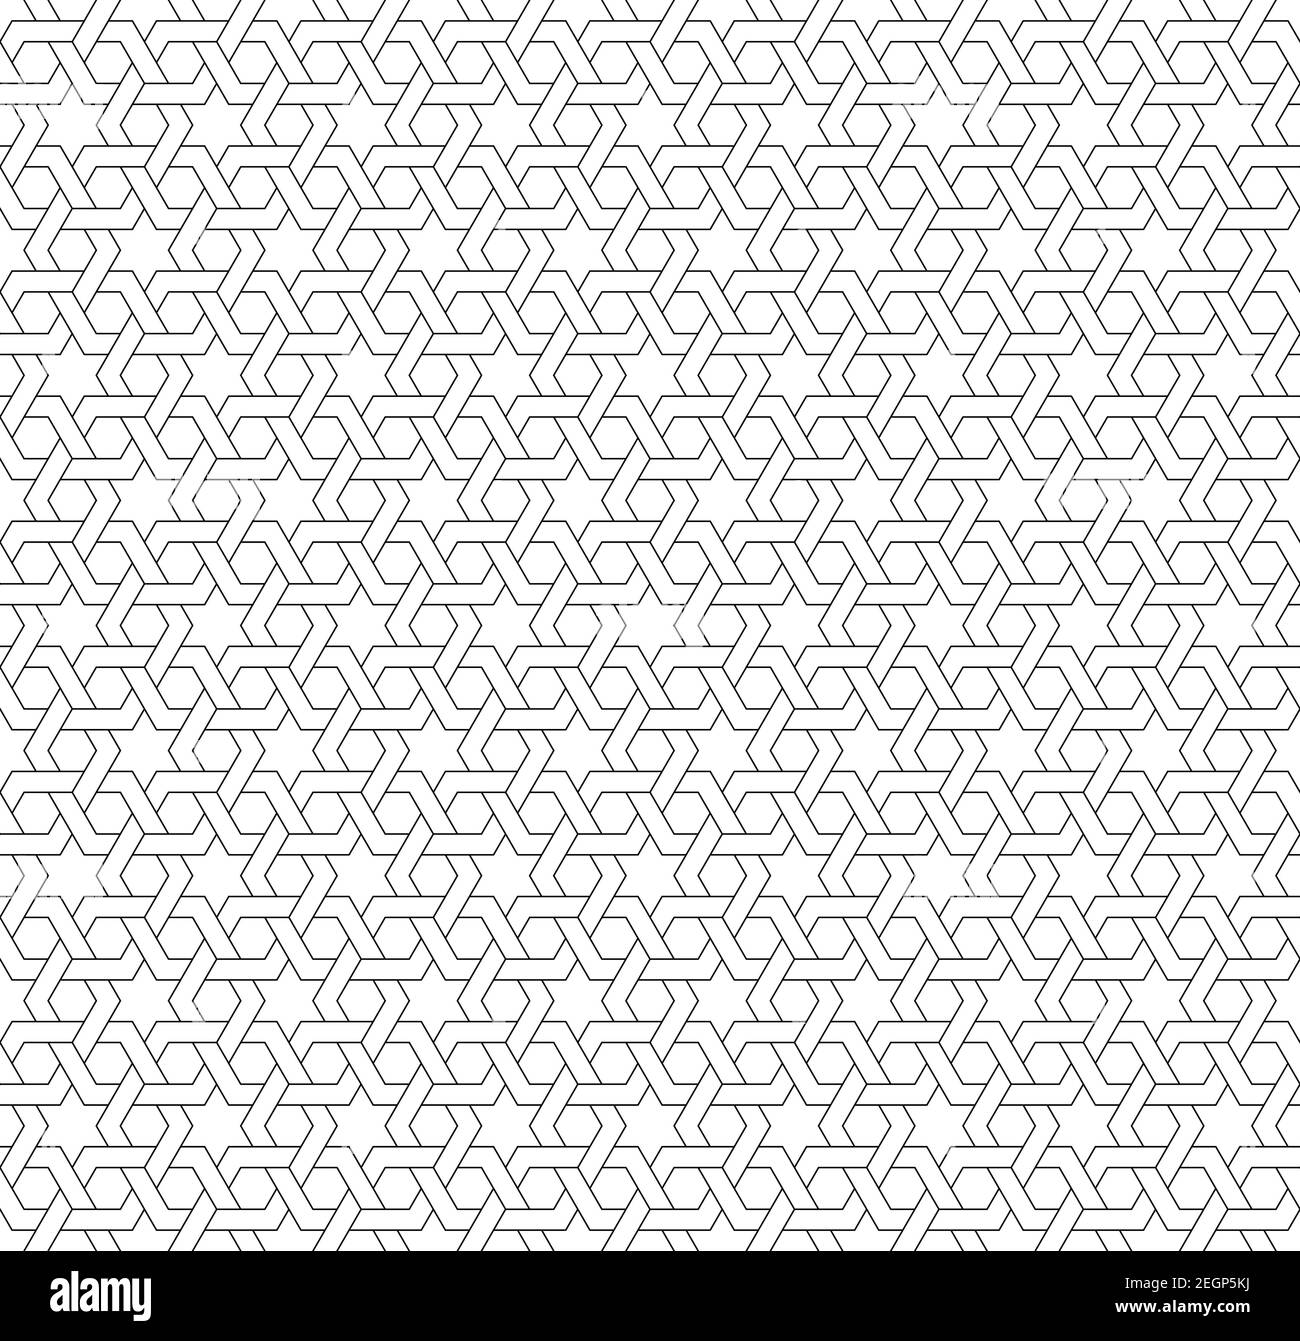 Ornamento geometrico senza cuciture basato su arte islamica tradizionale linee nere su sfondo bianco. Ottimo design per tessuto, tessuto, copertina, carta da imballaggio, ba Illustrazione Vettoriale